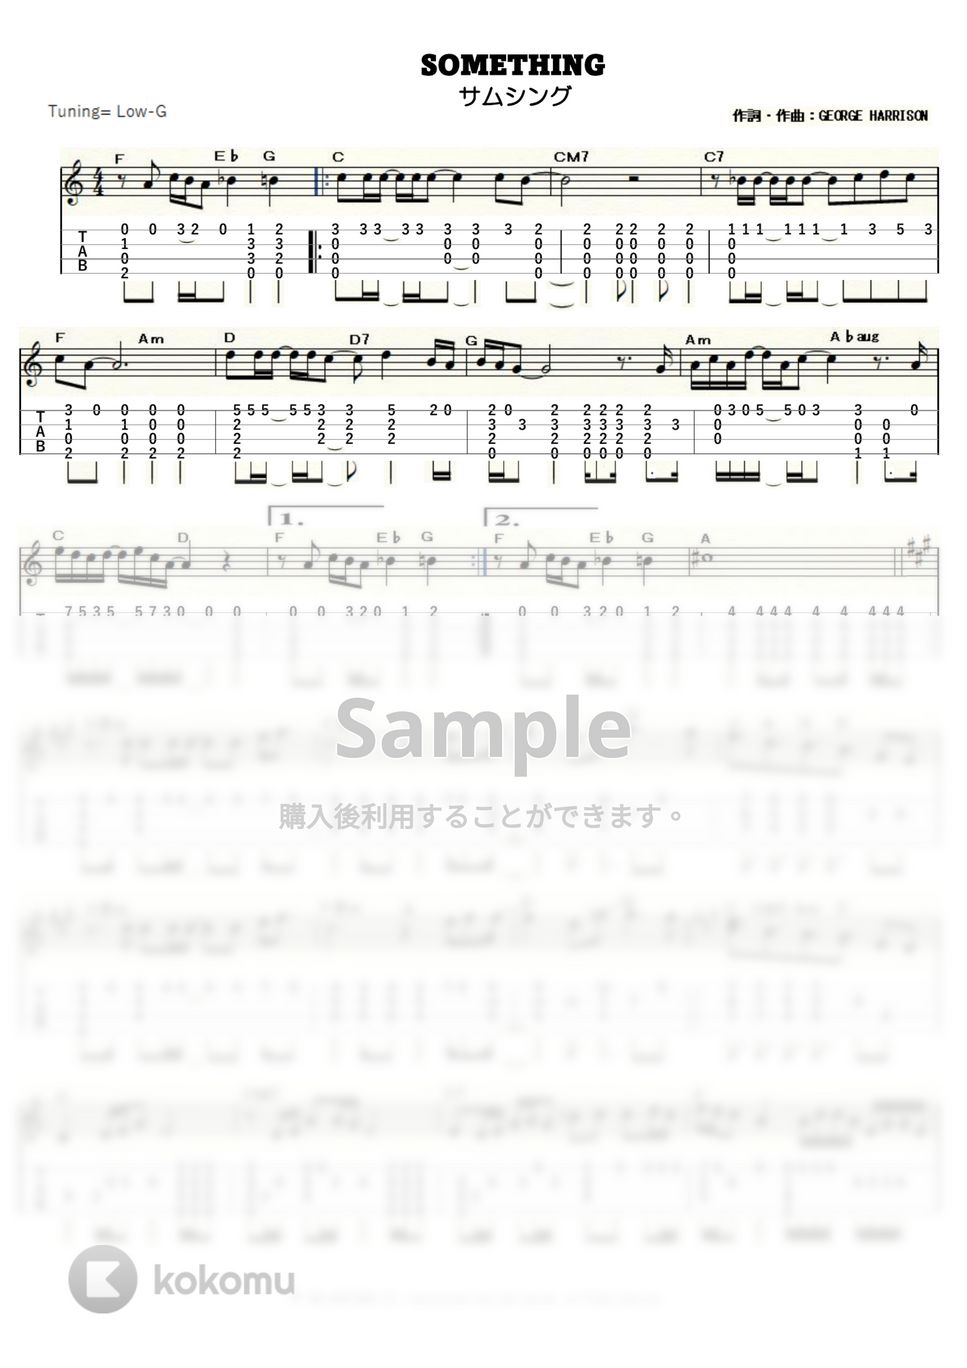 ビートルズ - サムシング (ｳｸﾚﾚｿﾛ / Low-G / 中級) by ukulelepapa